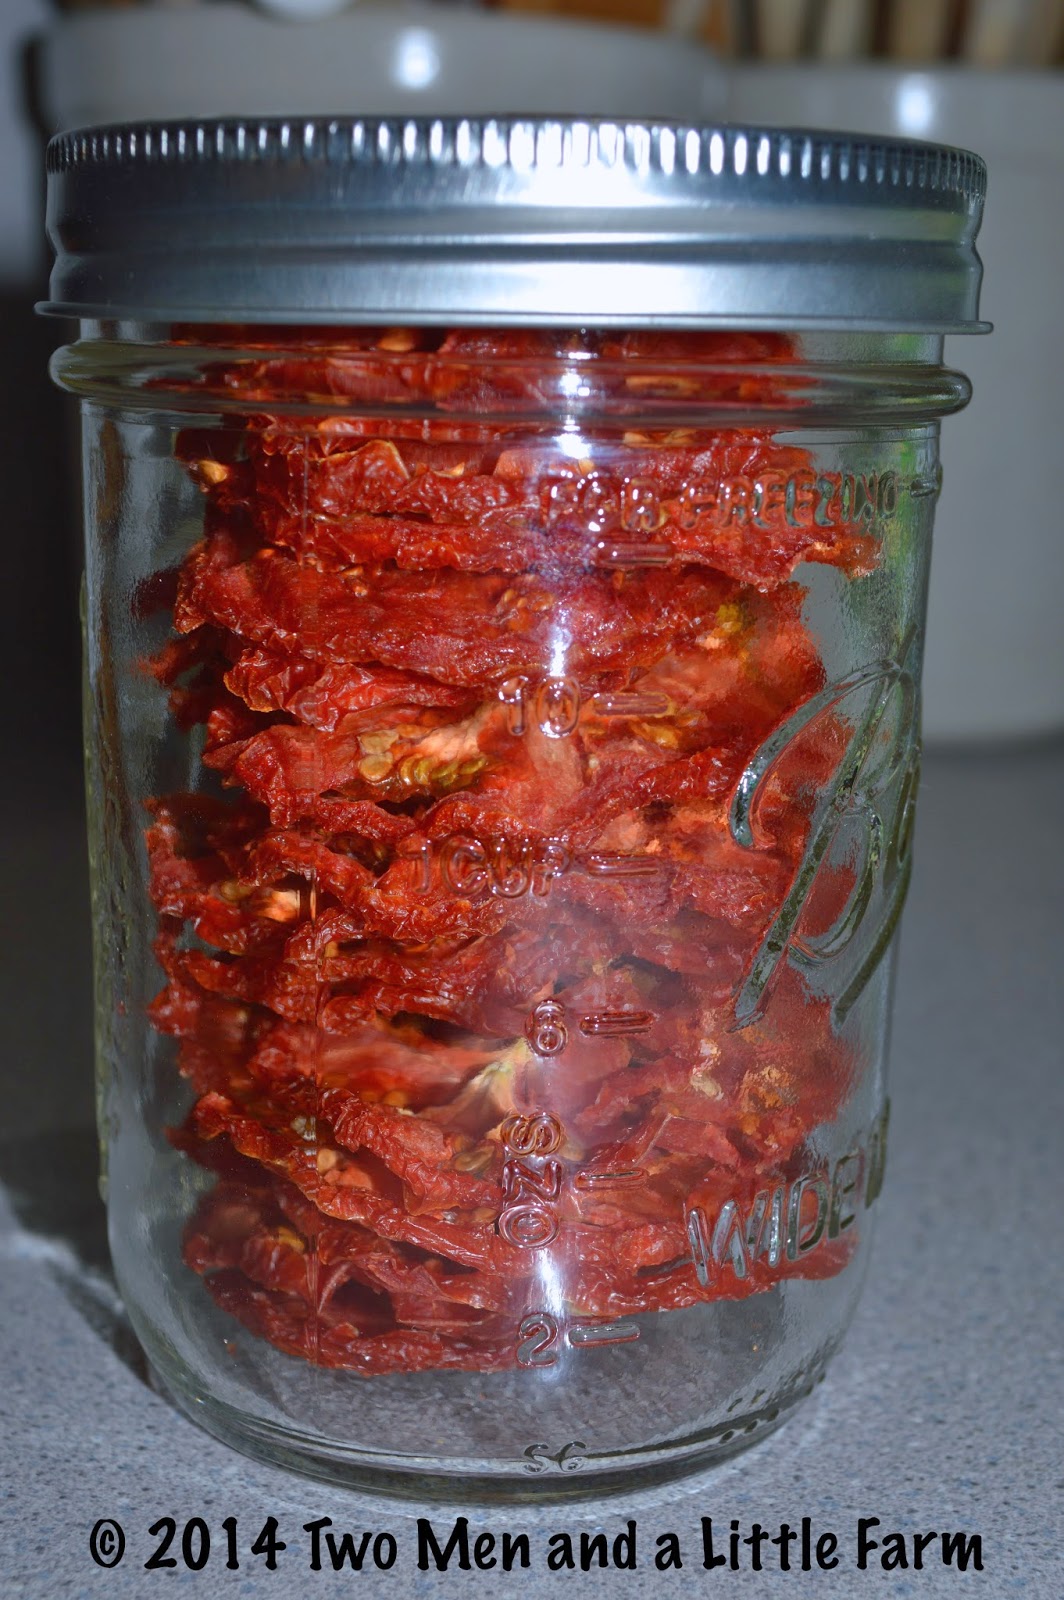 http://1.bp.blogspot.com/-YPNcJRpO6fc/UyYMh17NnII/AAAAAAAAOeg/_xR2oRCd0Mg/s1600/dehydrating+tomatoes+5.jpg